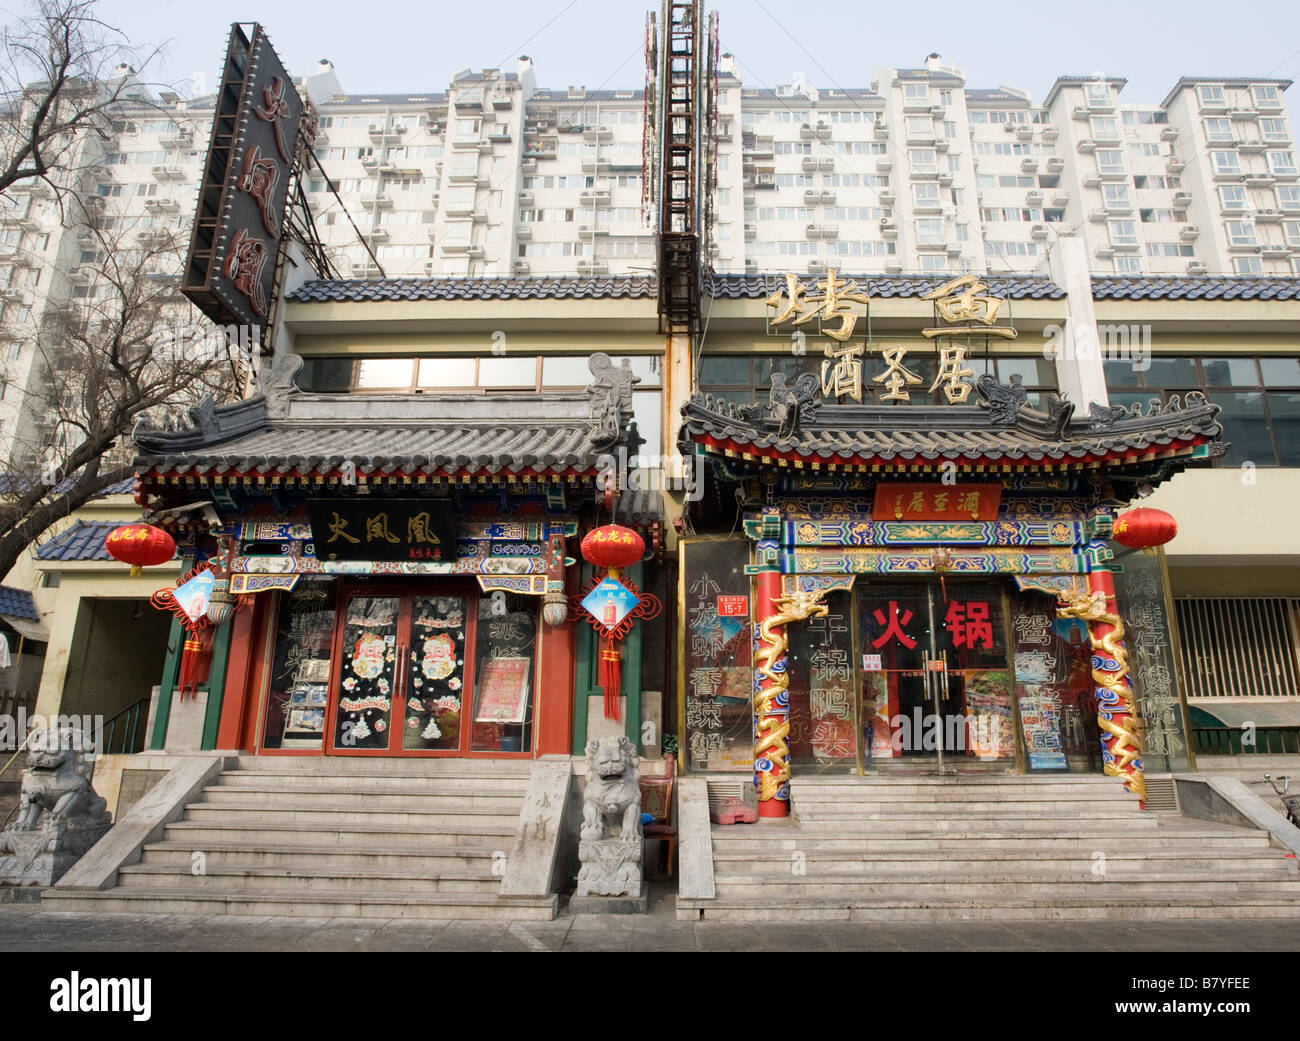 El contraste entre los tradicionales edificios antiguos ornamentados con restaurantes y modernos edificios de apartamentos en la parte trasera en el centro de Pekín Foto de stock